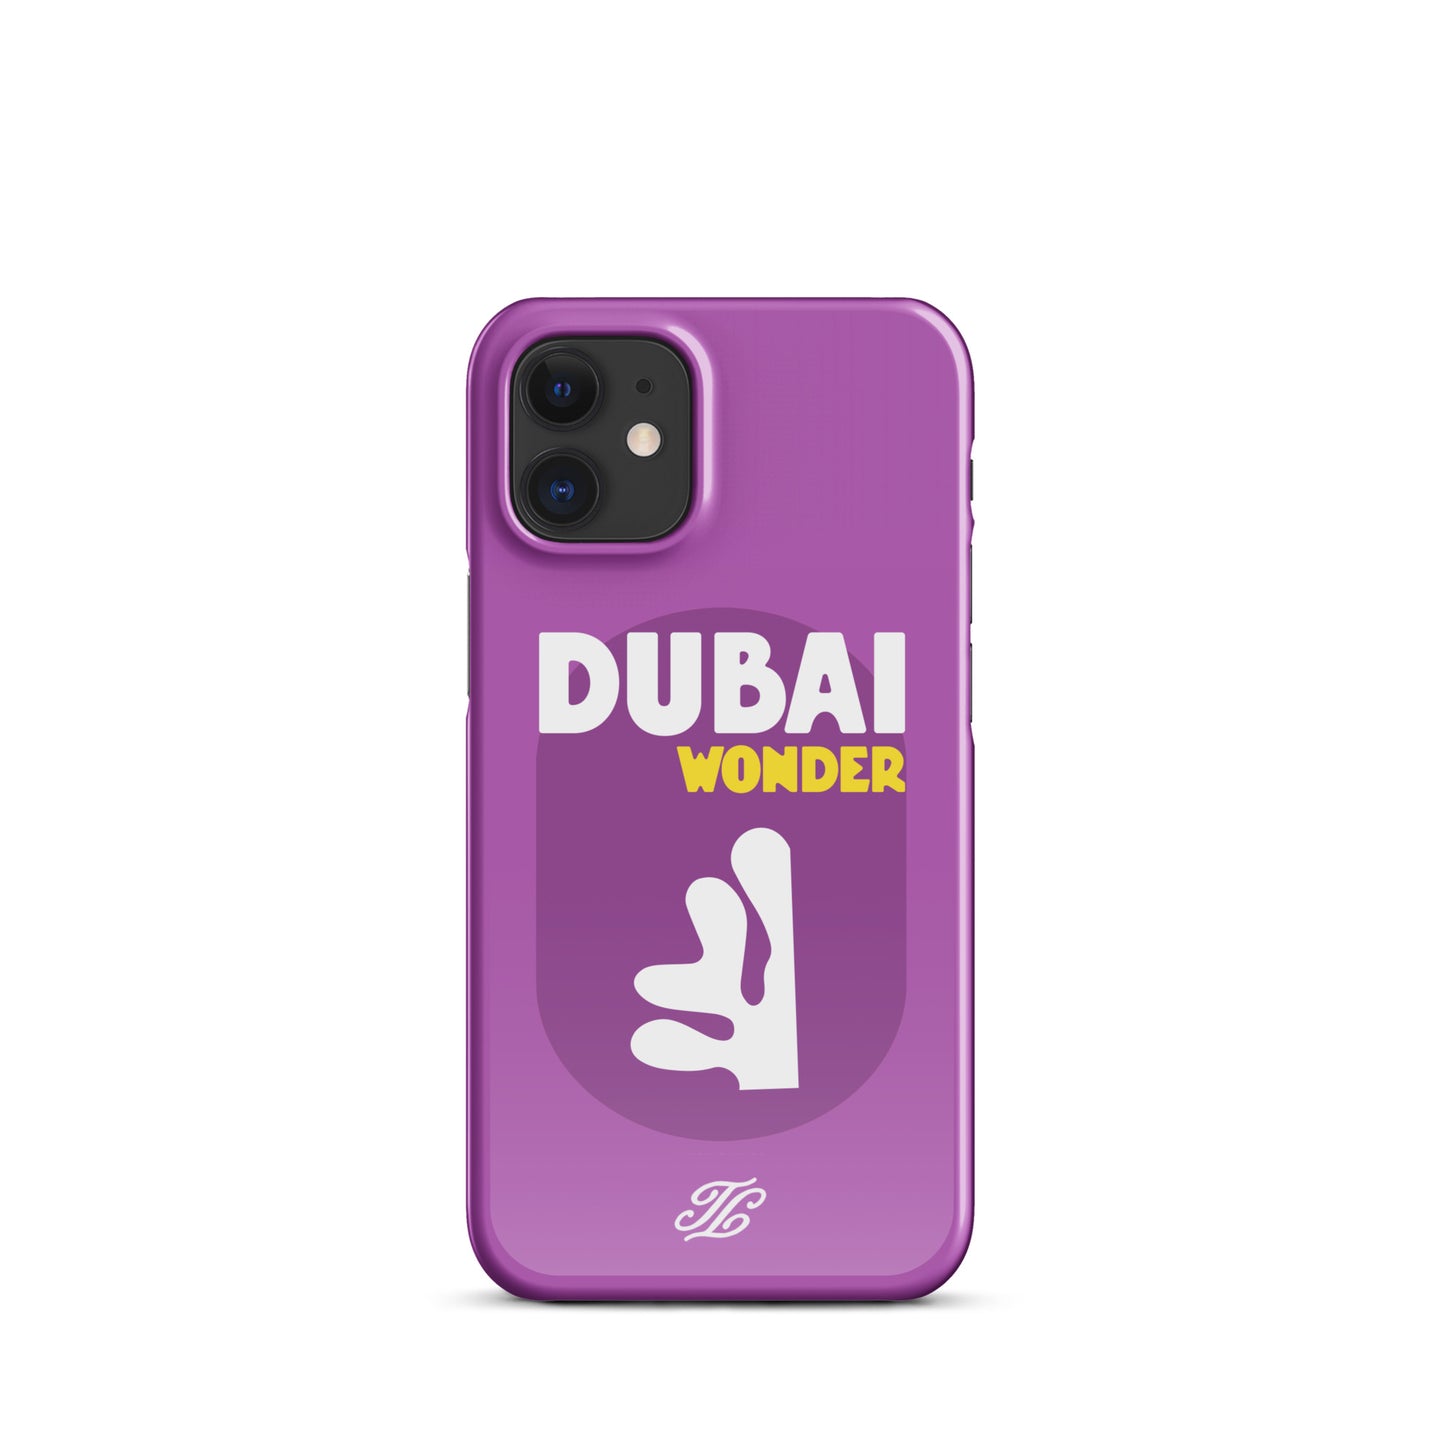 Dubai iPhone® case